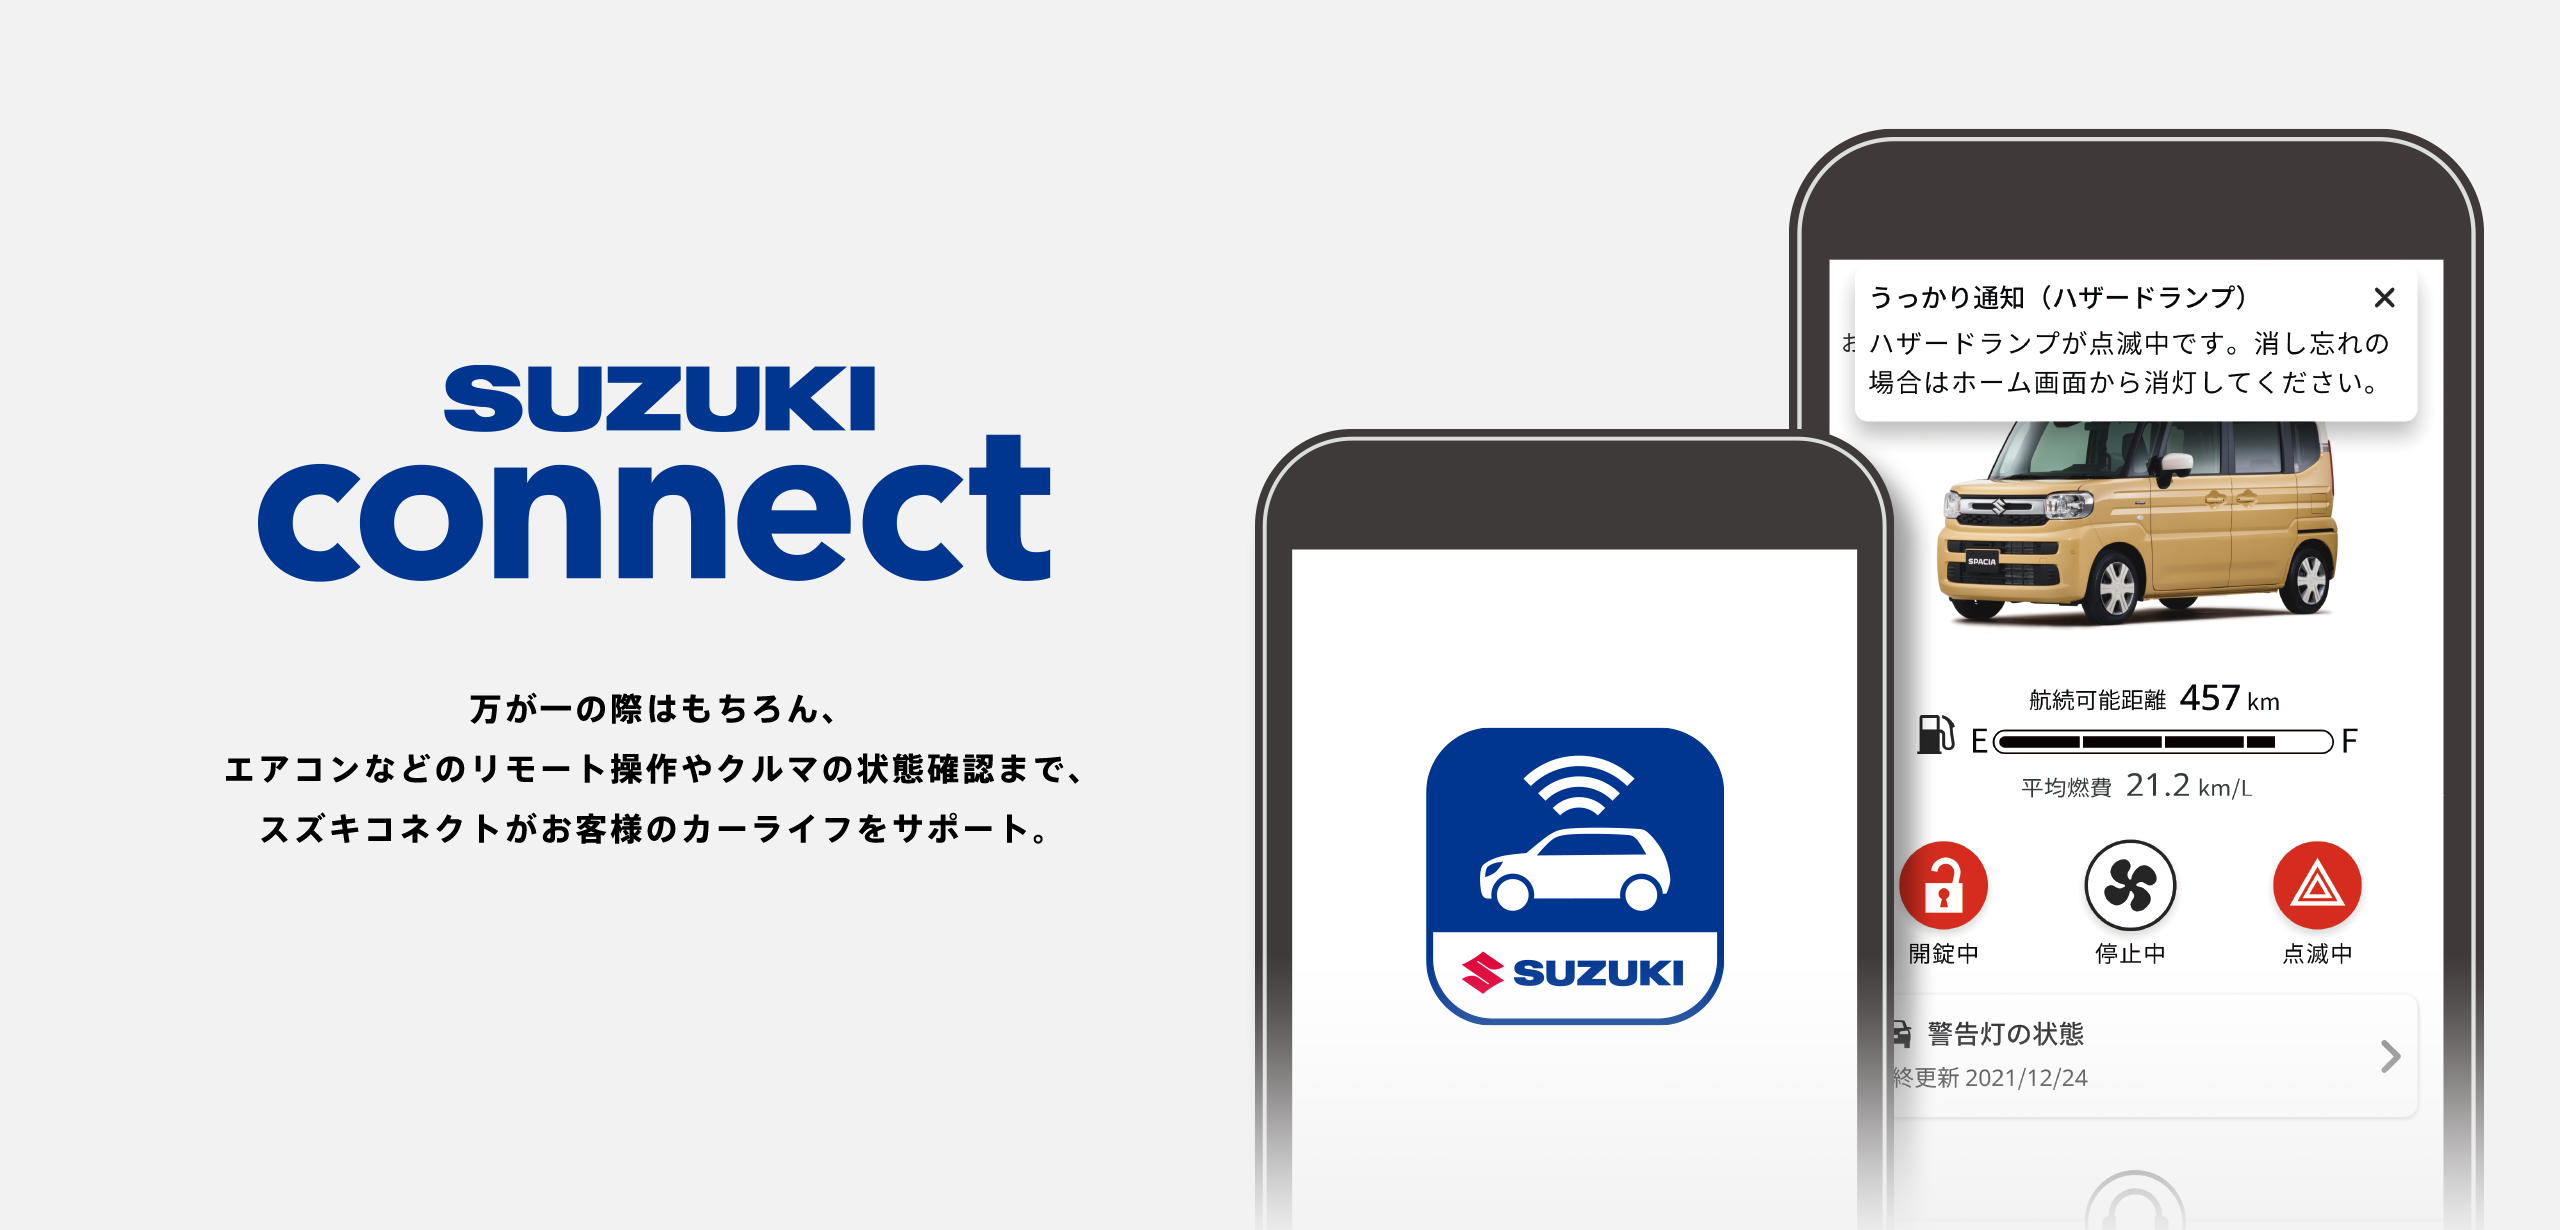 SUZUKI connect 万が一の際はもちろん、エアコンなどのリモート操作やクルマの状態確認まで、スズキコネクトがお客様のカーライフをサポート。